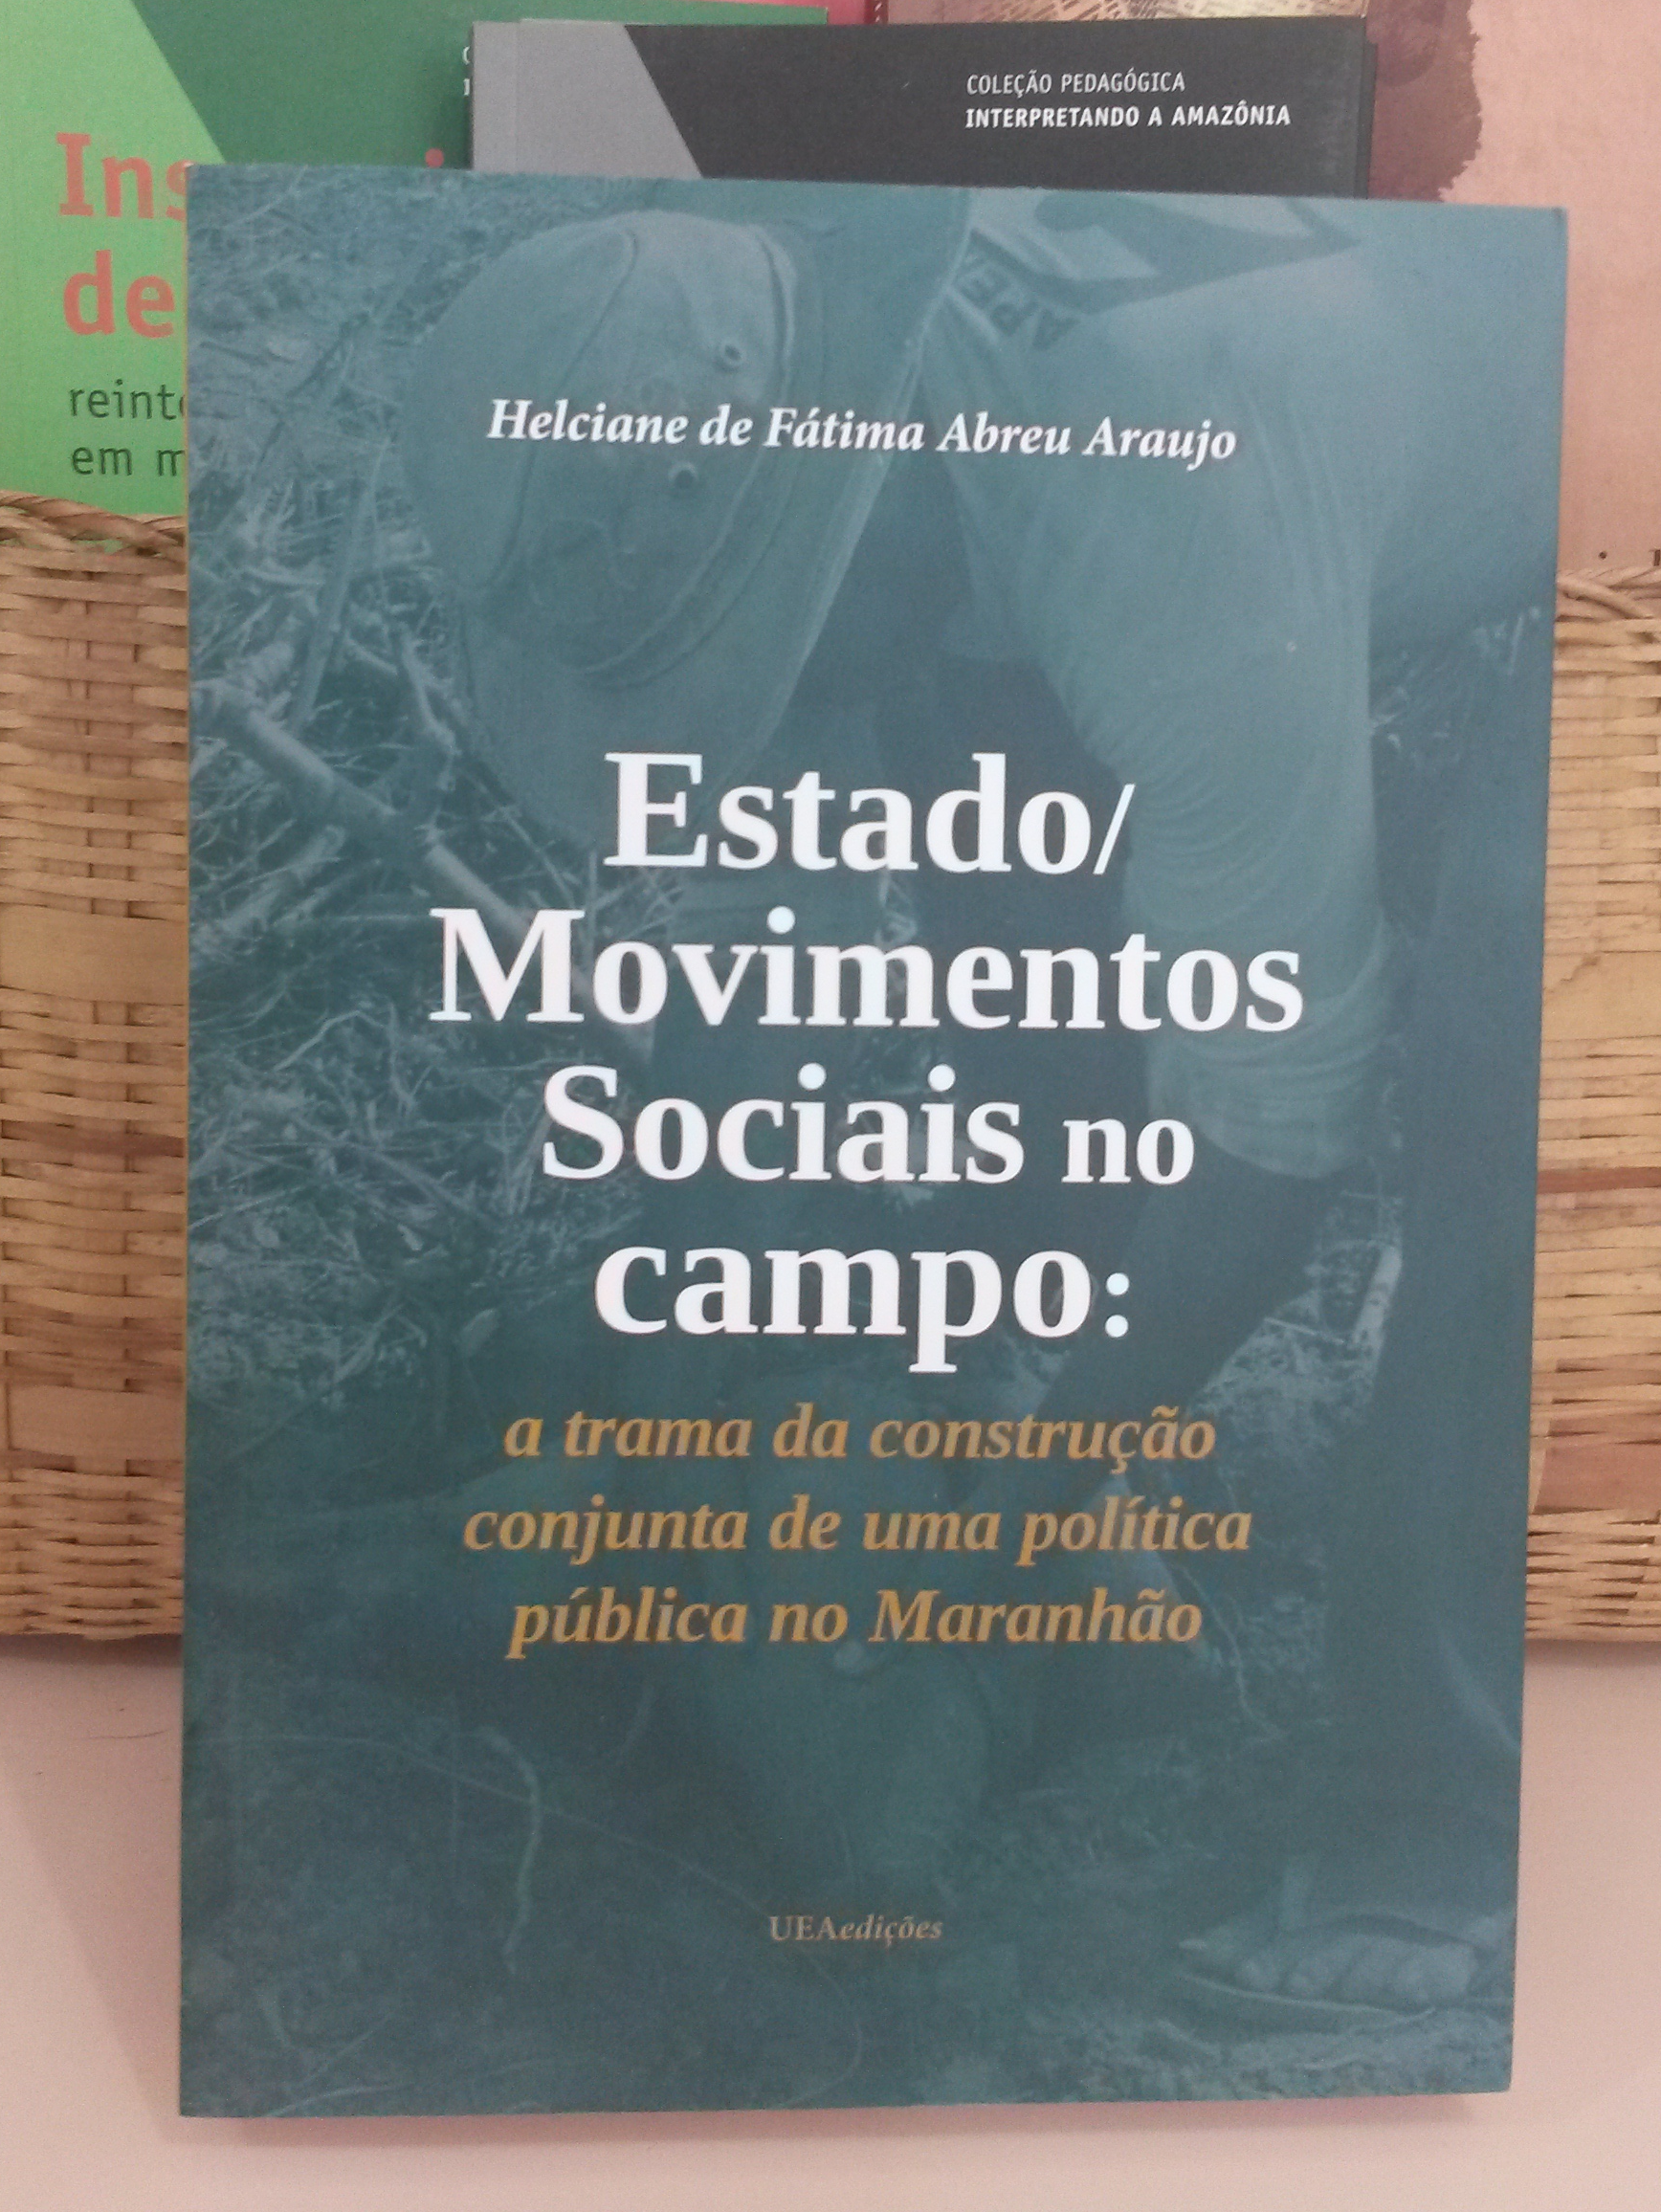 Estado/ Movimentos Sociais no Campo: A Trama de uma Construção Conjunta de Uma Política Pública no Maranhão